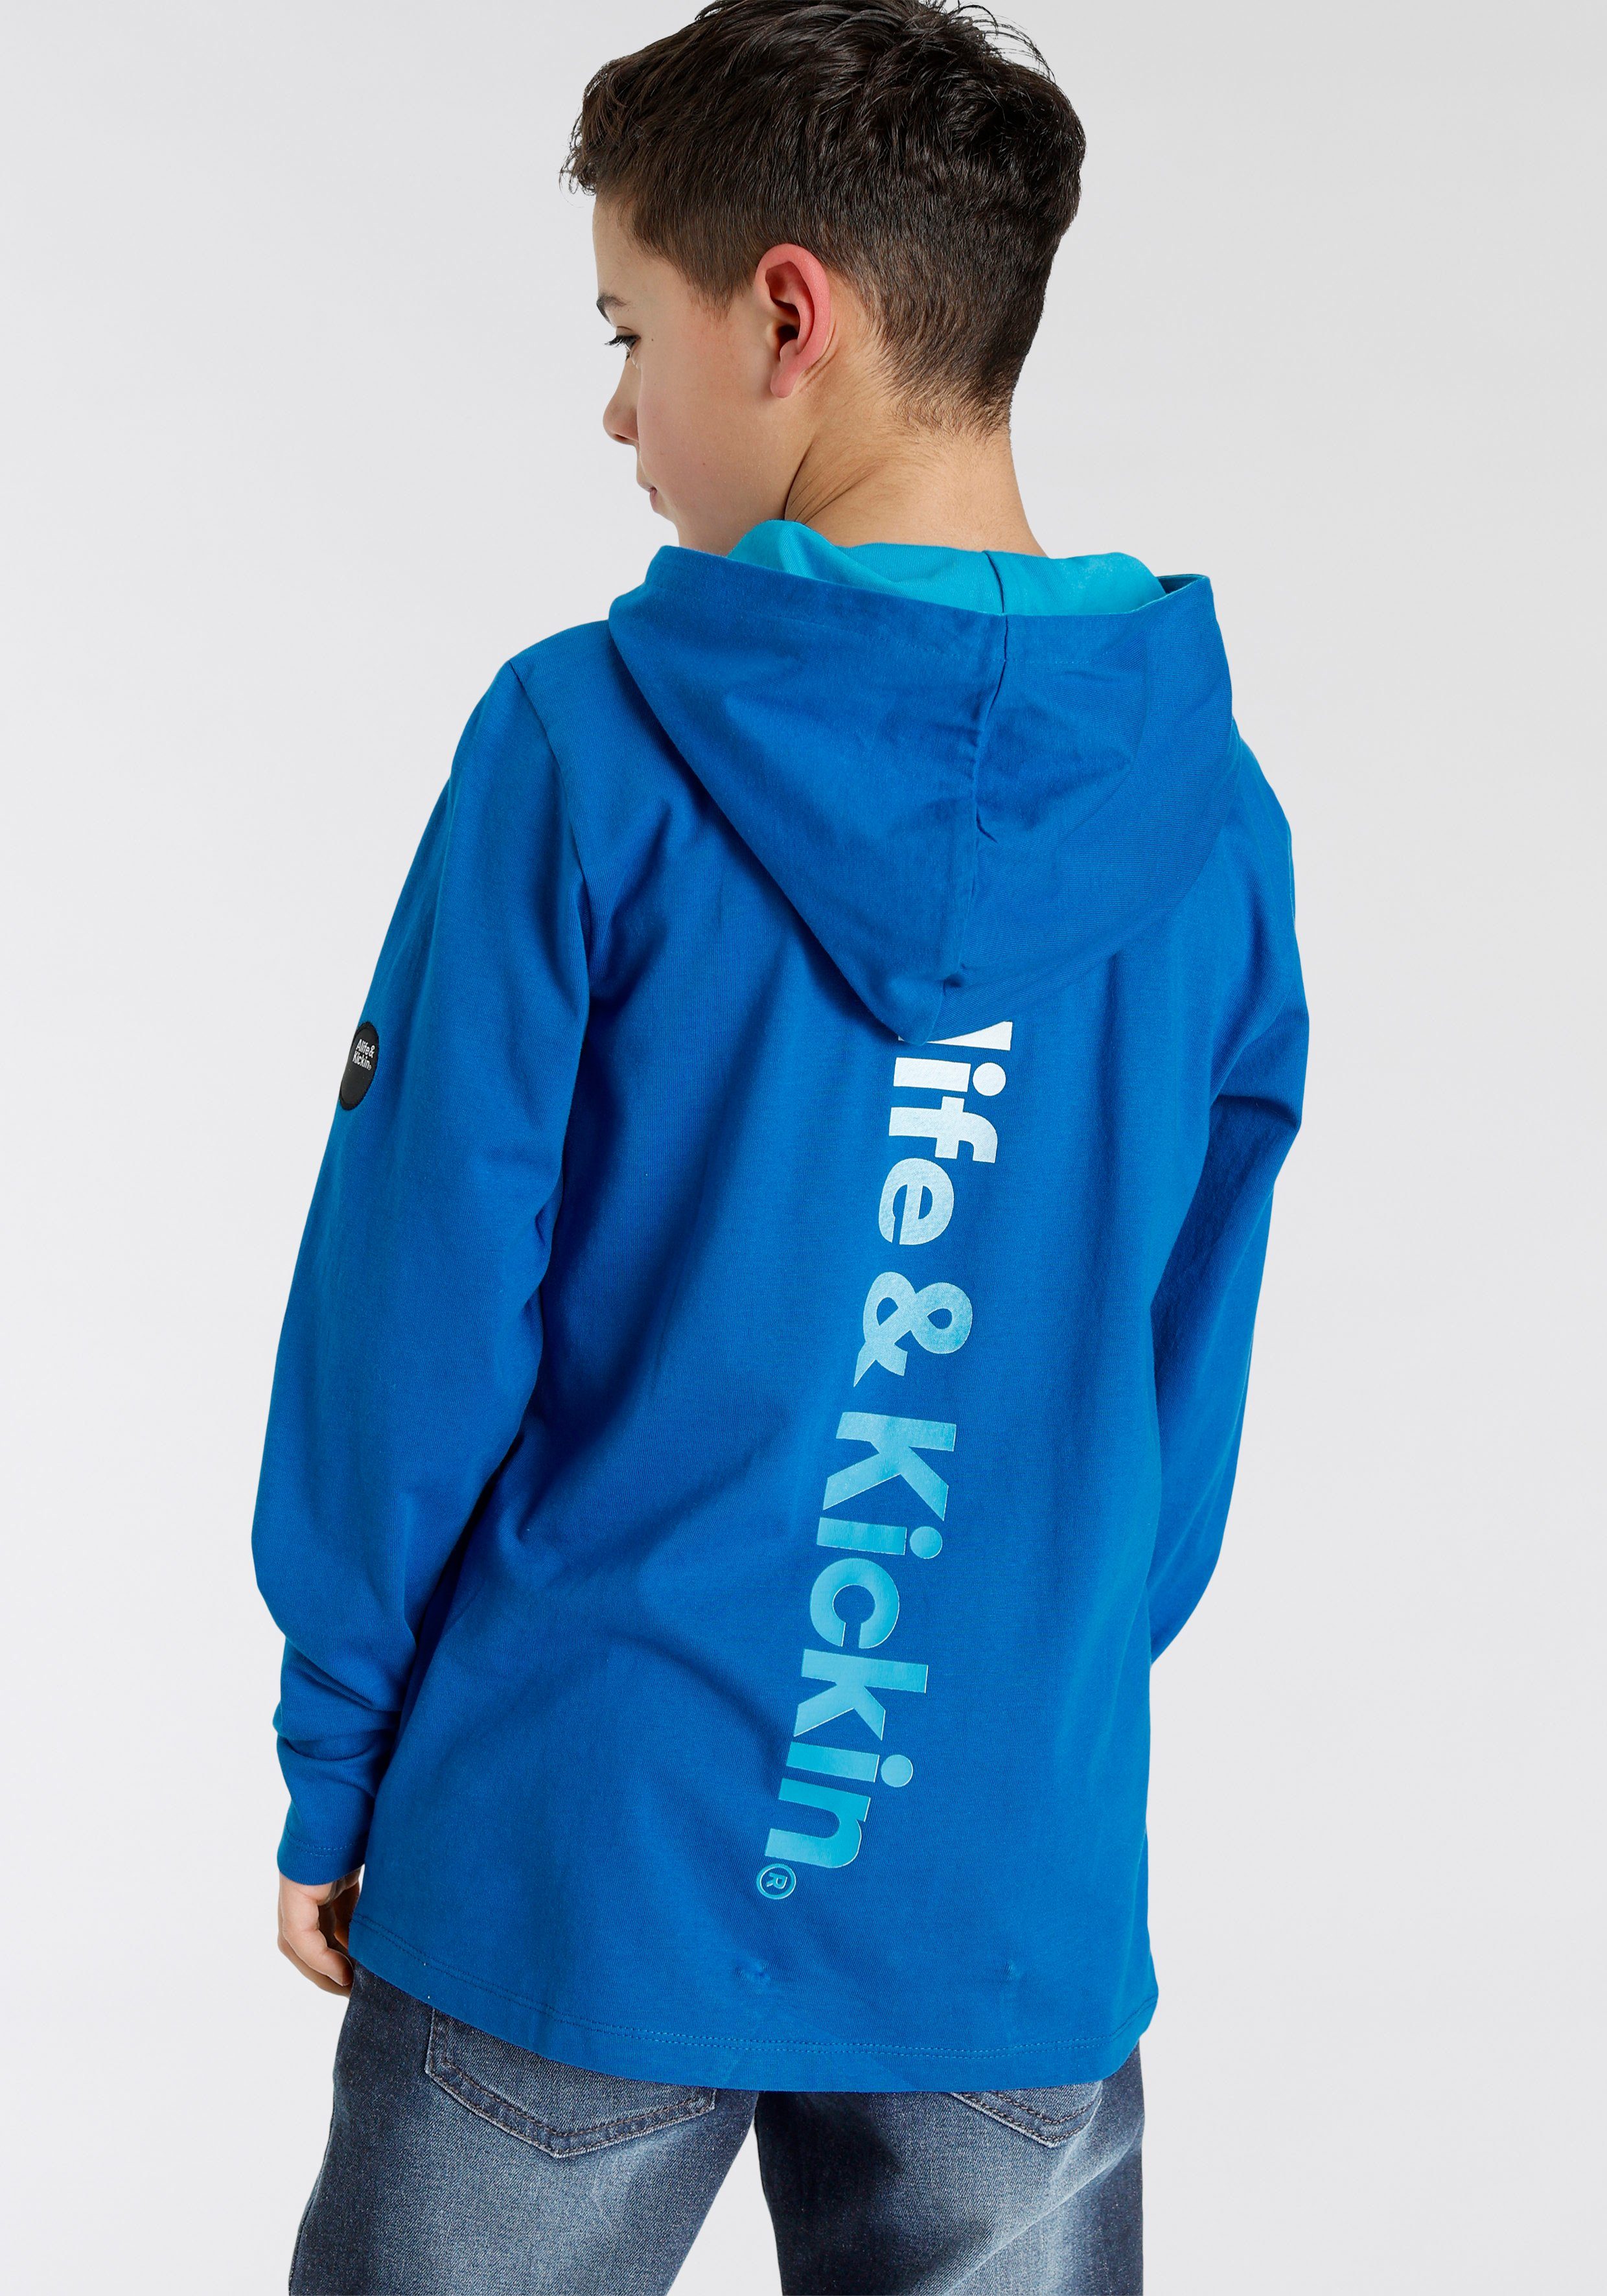 Auch supergünstig! Alife & Farbverlauf, Rückenprint modischer NEUE Kapuzenshirt im Logo-Print MARKE! Kickin